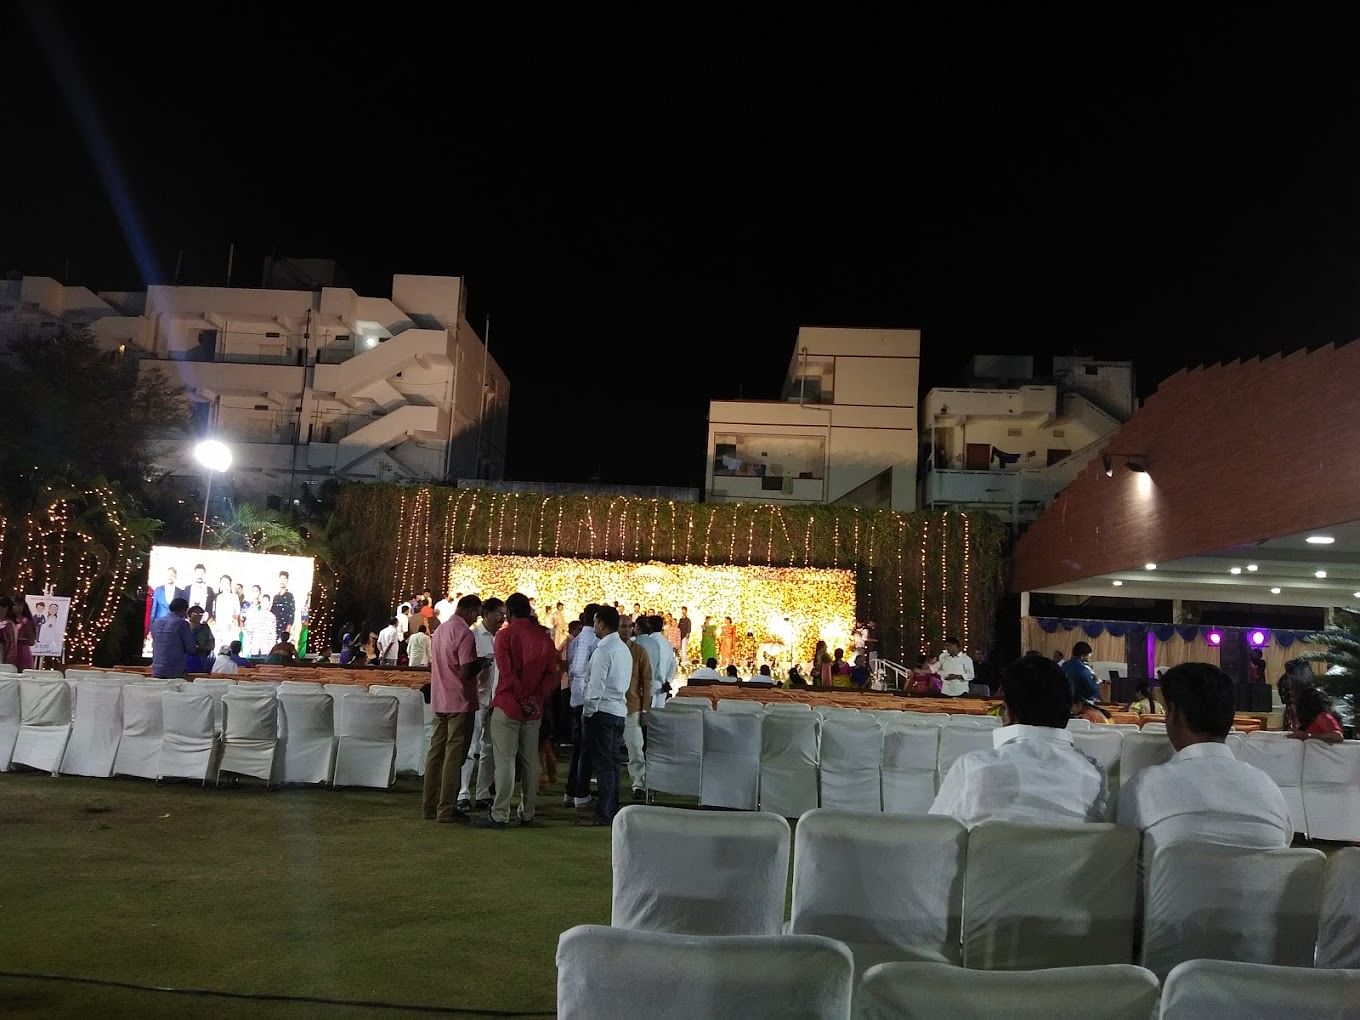 VMR Convention Hall in Neeladri Nagar, Hyderabad